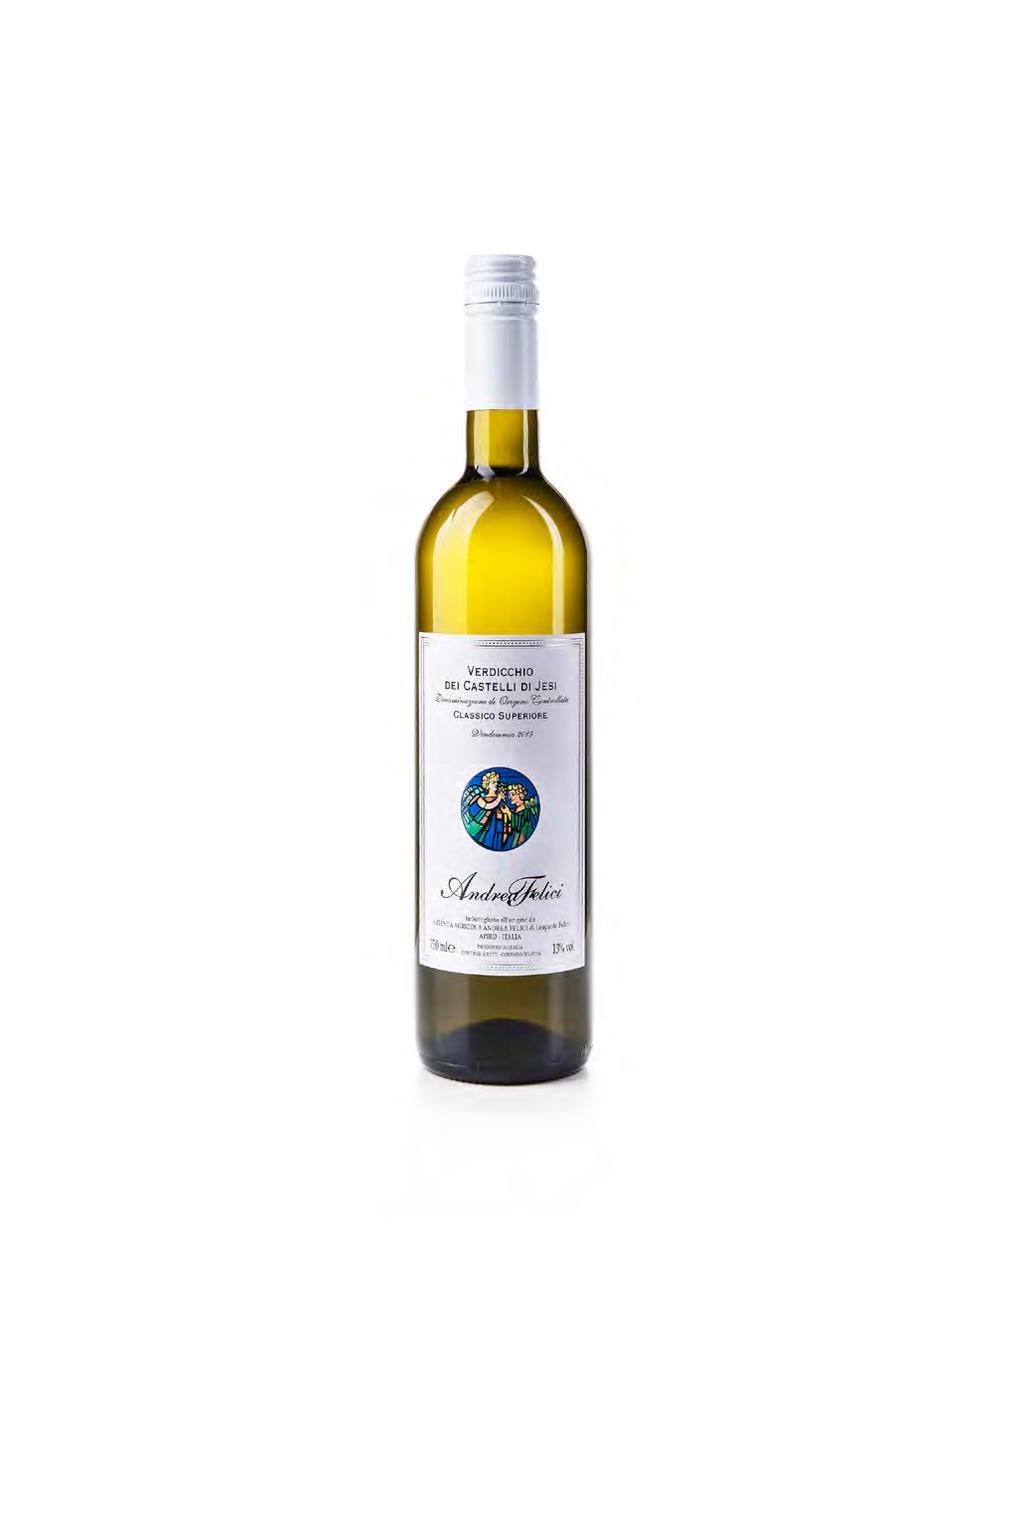 Classico superiore Andrea Felici - Verdicchio dei Castelli di Jesi Un Cuvée di vigne giovani e vigne più vecchie.